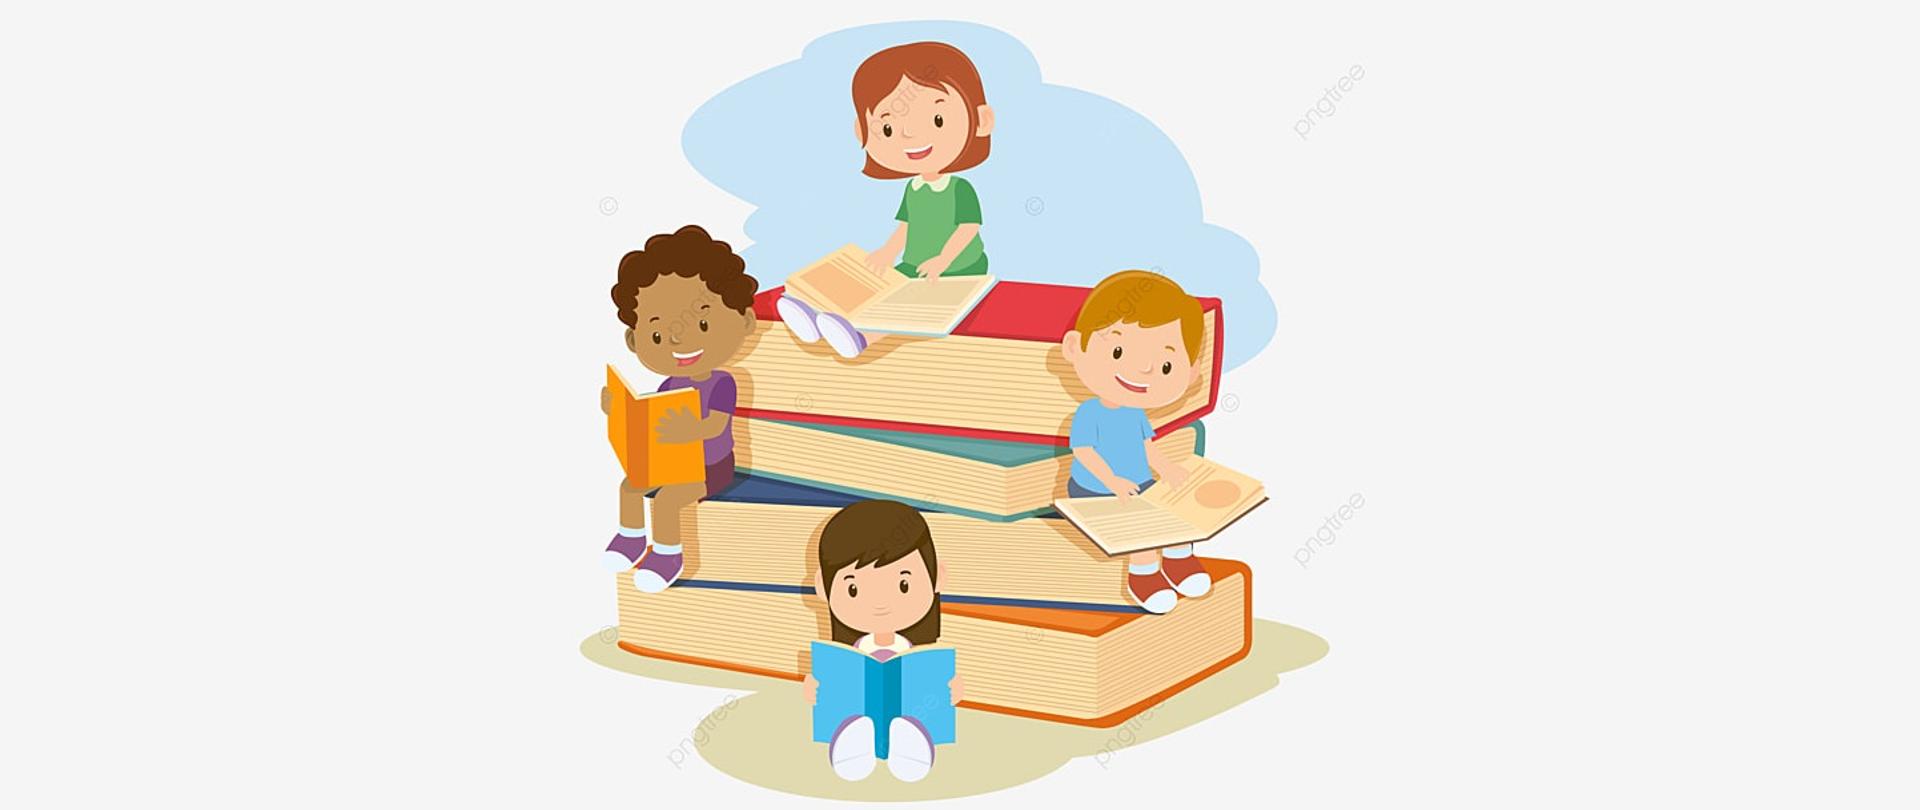 Obrazek dzieci siedzących i czytających książki na stosie wielkich książek